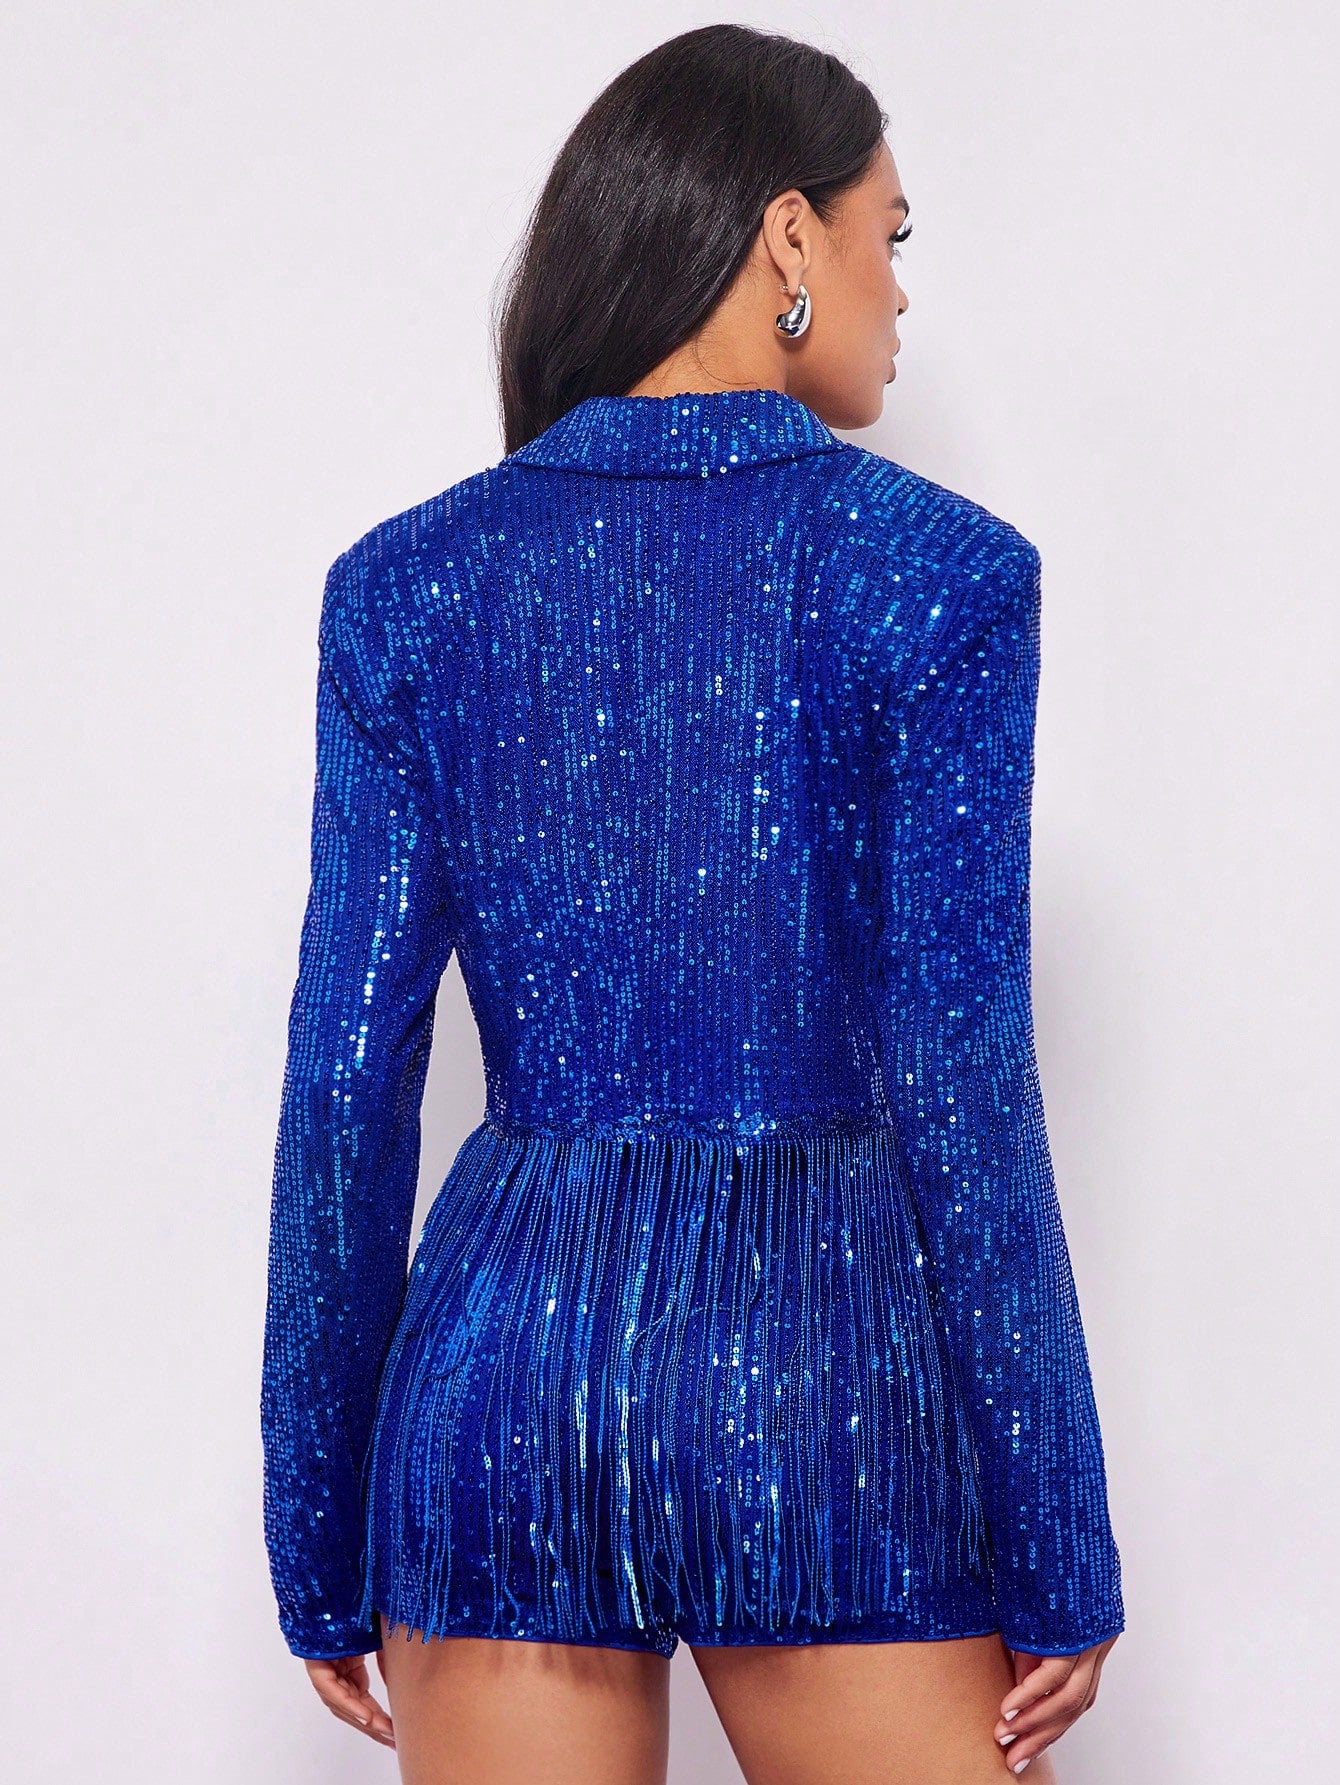 model from behind wearing a Blue sequin jacket fancy dress